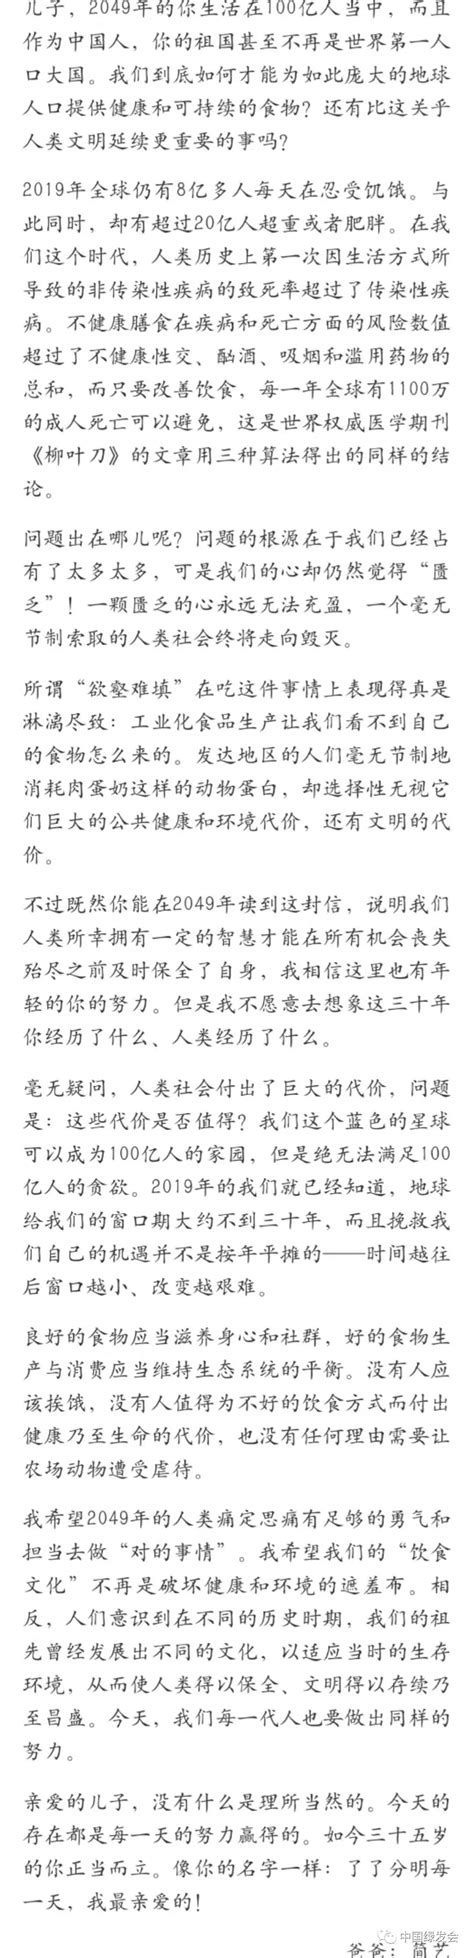 愿人人都享有良食｜父亲简艺致儿子简明了的一封信- 中国生物多样性保护与绿色发展基金会